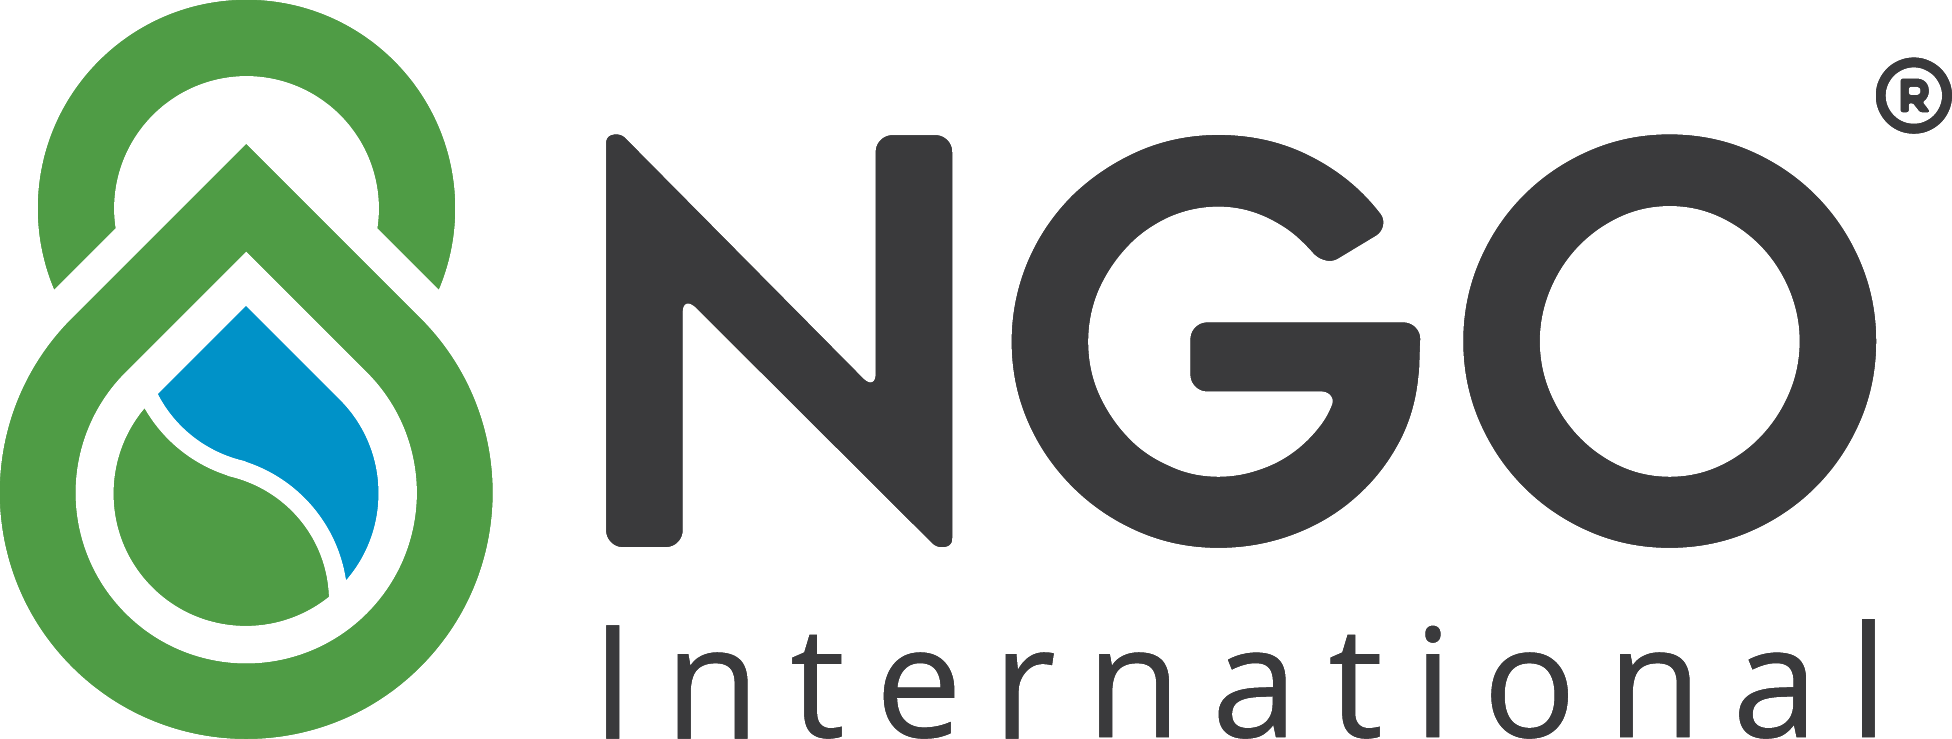 Công ty TNHH Quốc tế NGO 